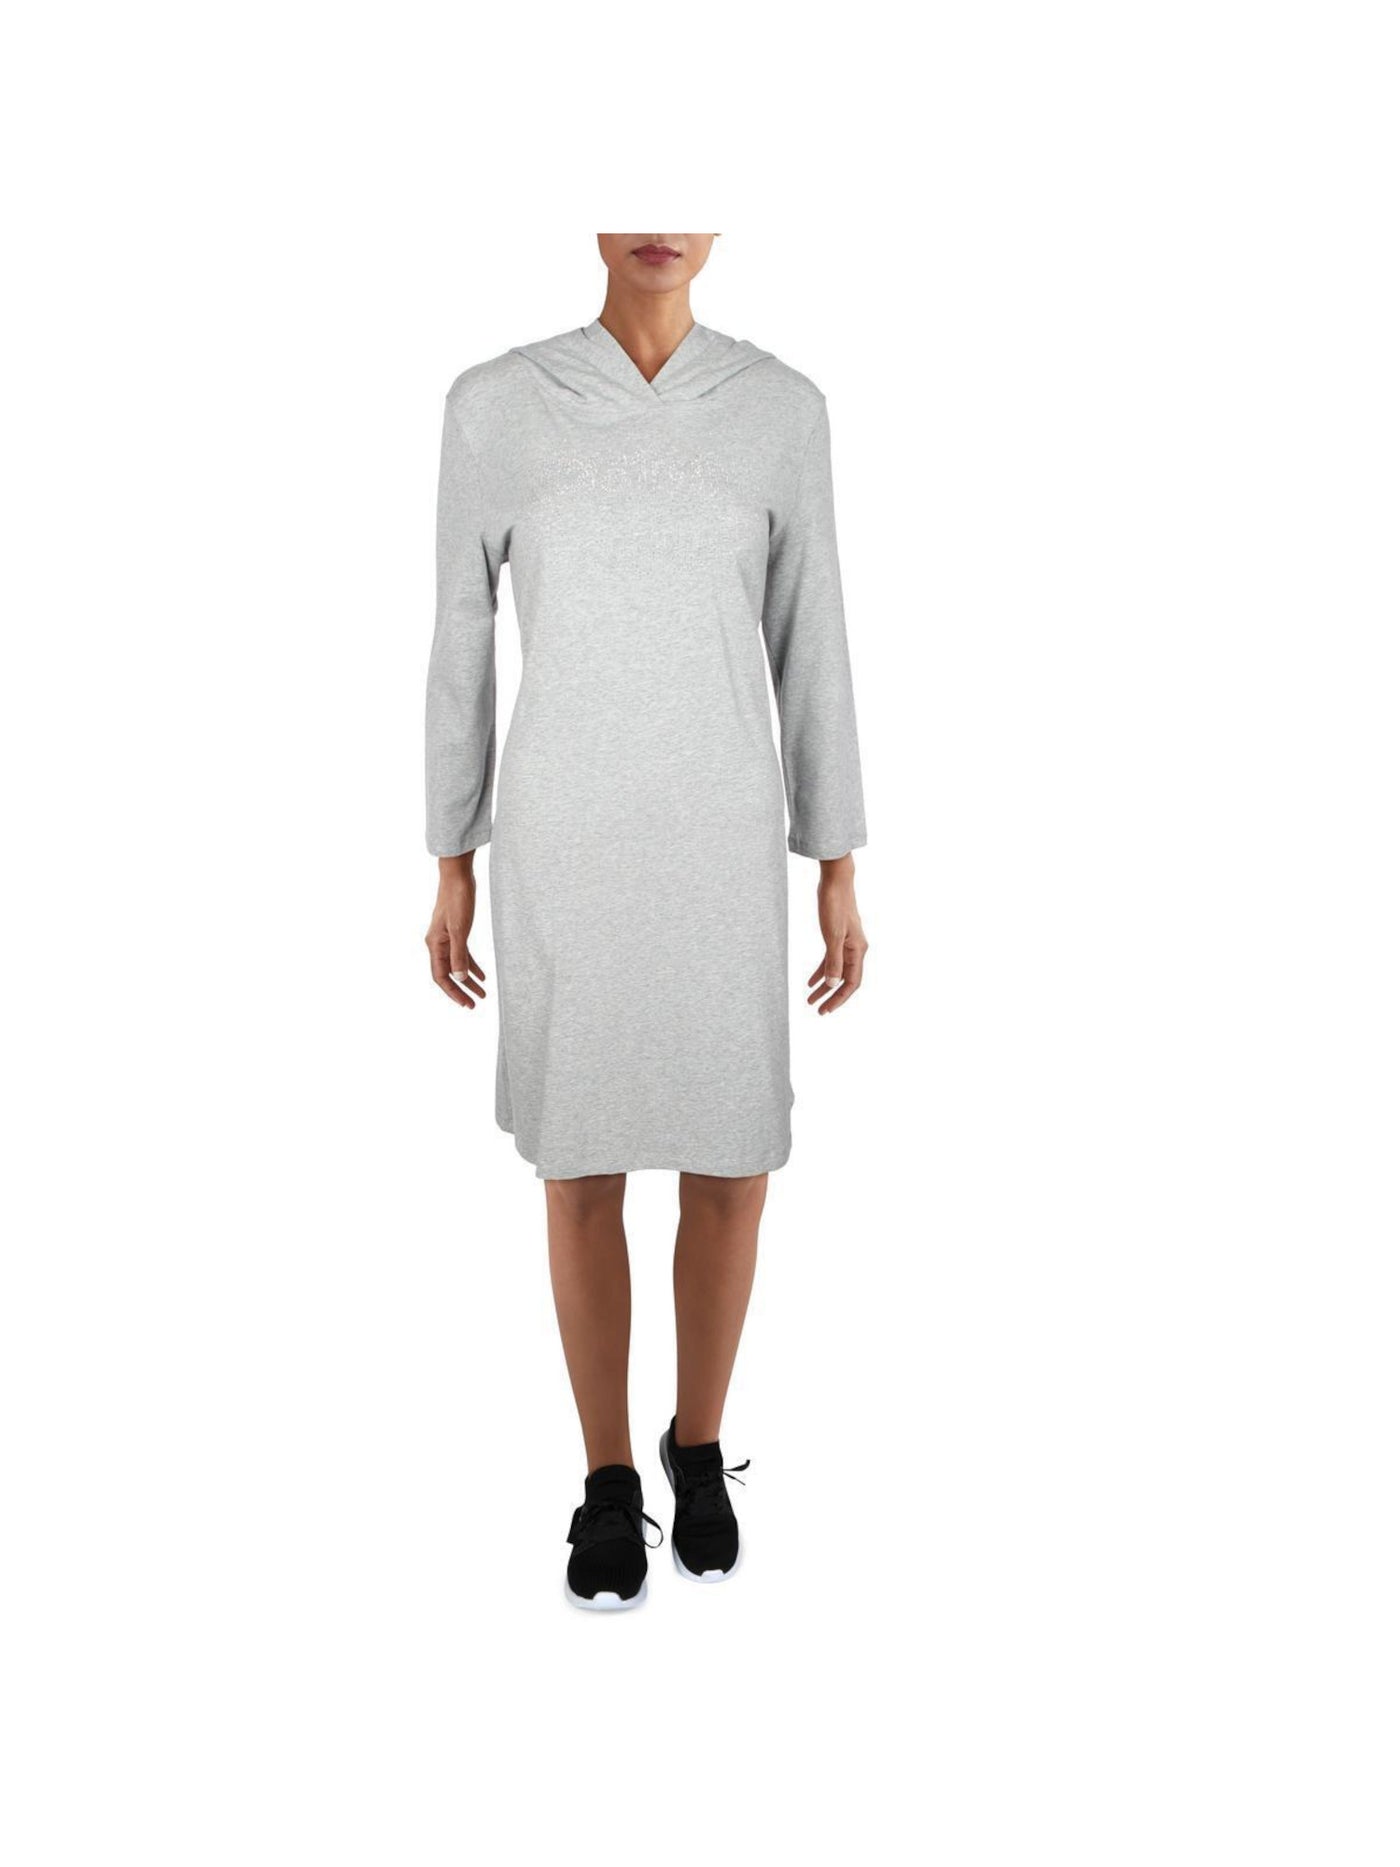 CALVIN KLEIN Womens Gray Heather Long Sleeve Knee Length T-Shirt Dress M